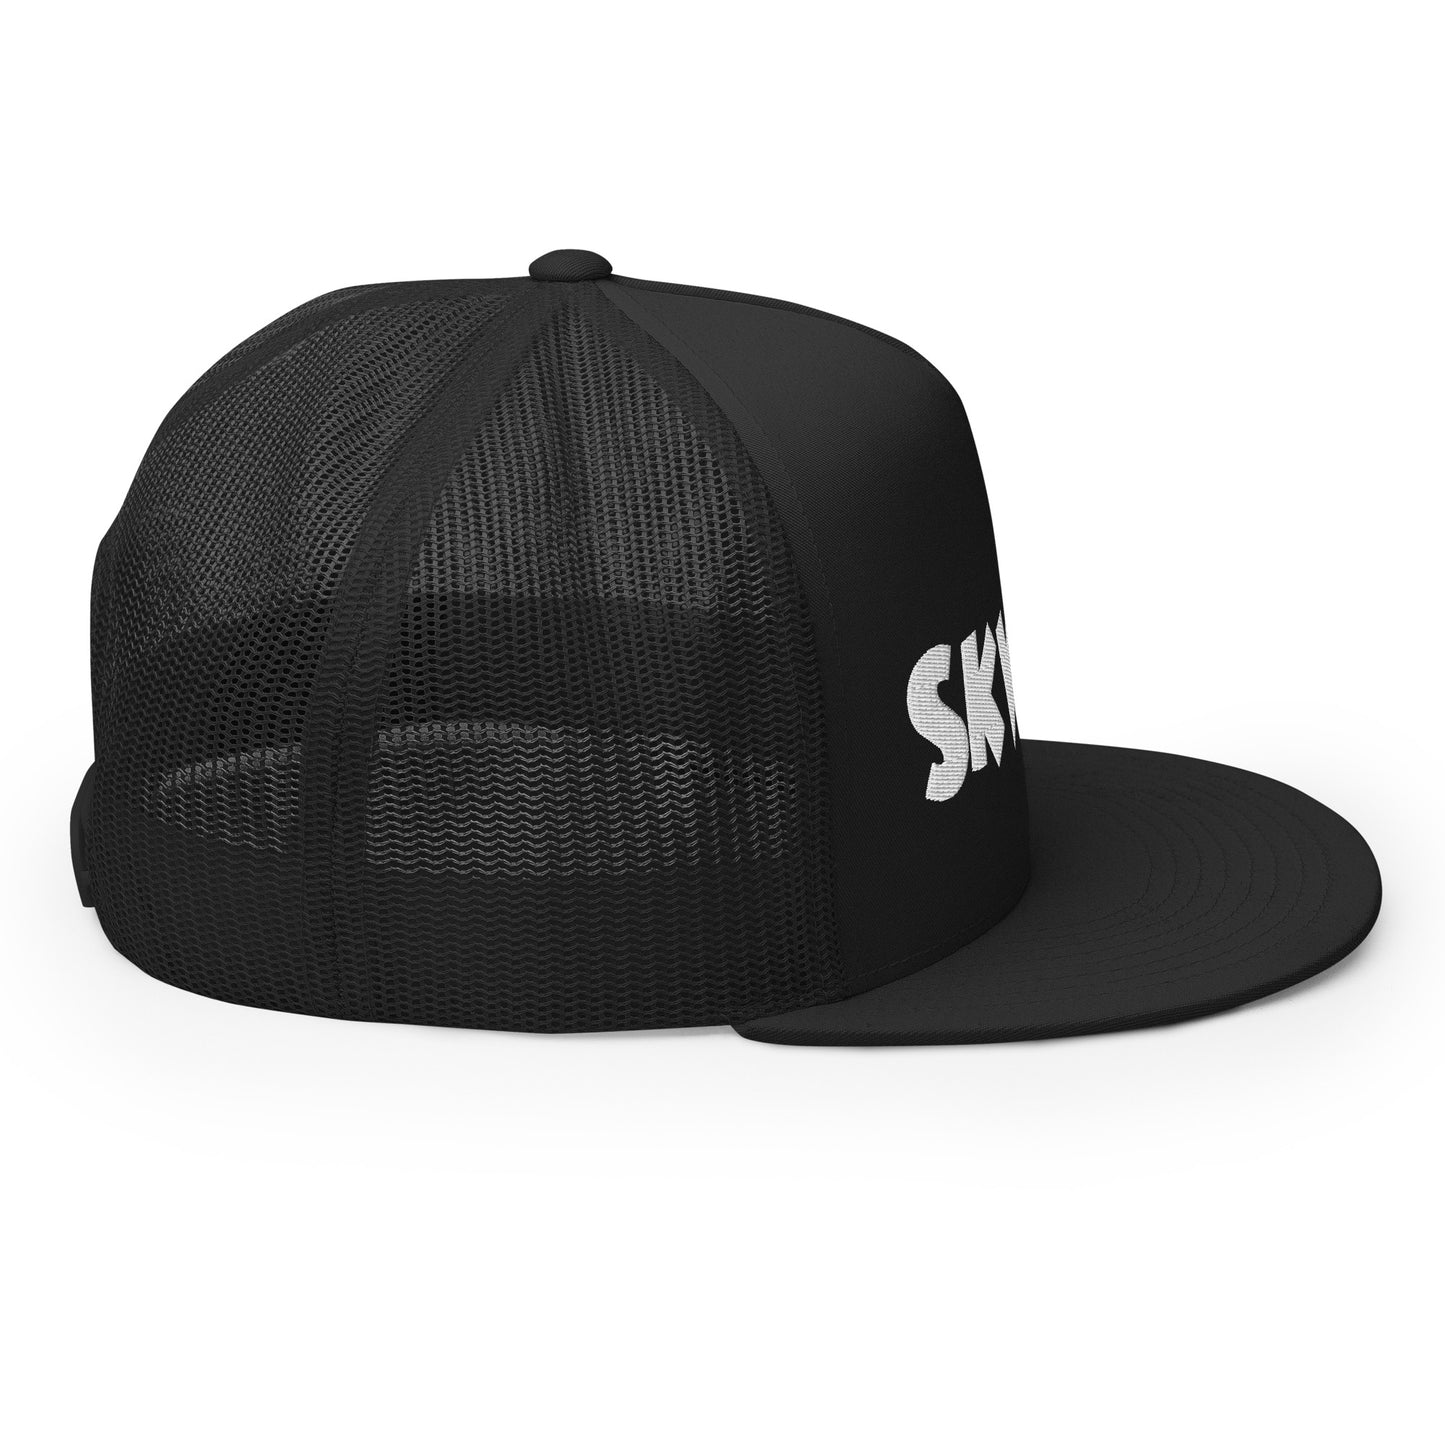 Skwok Brand / Hat / Trucker Cap / OG Logo / 3D Puff / Black / White